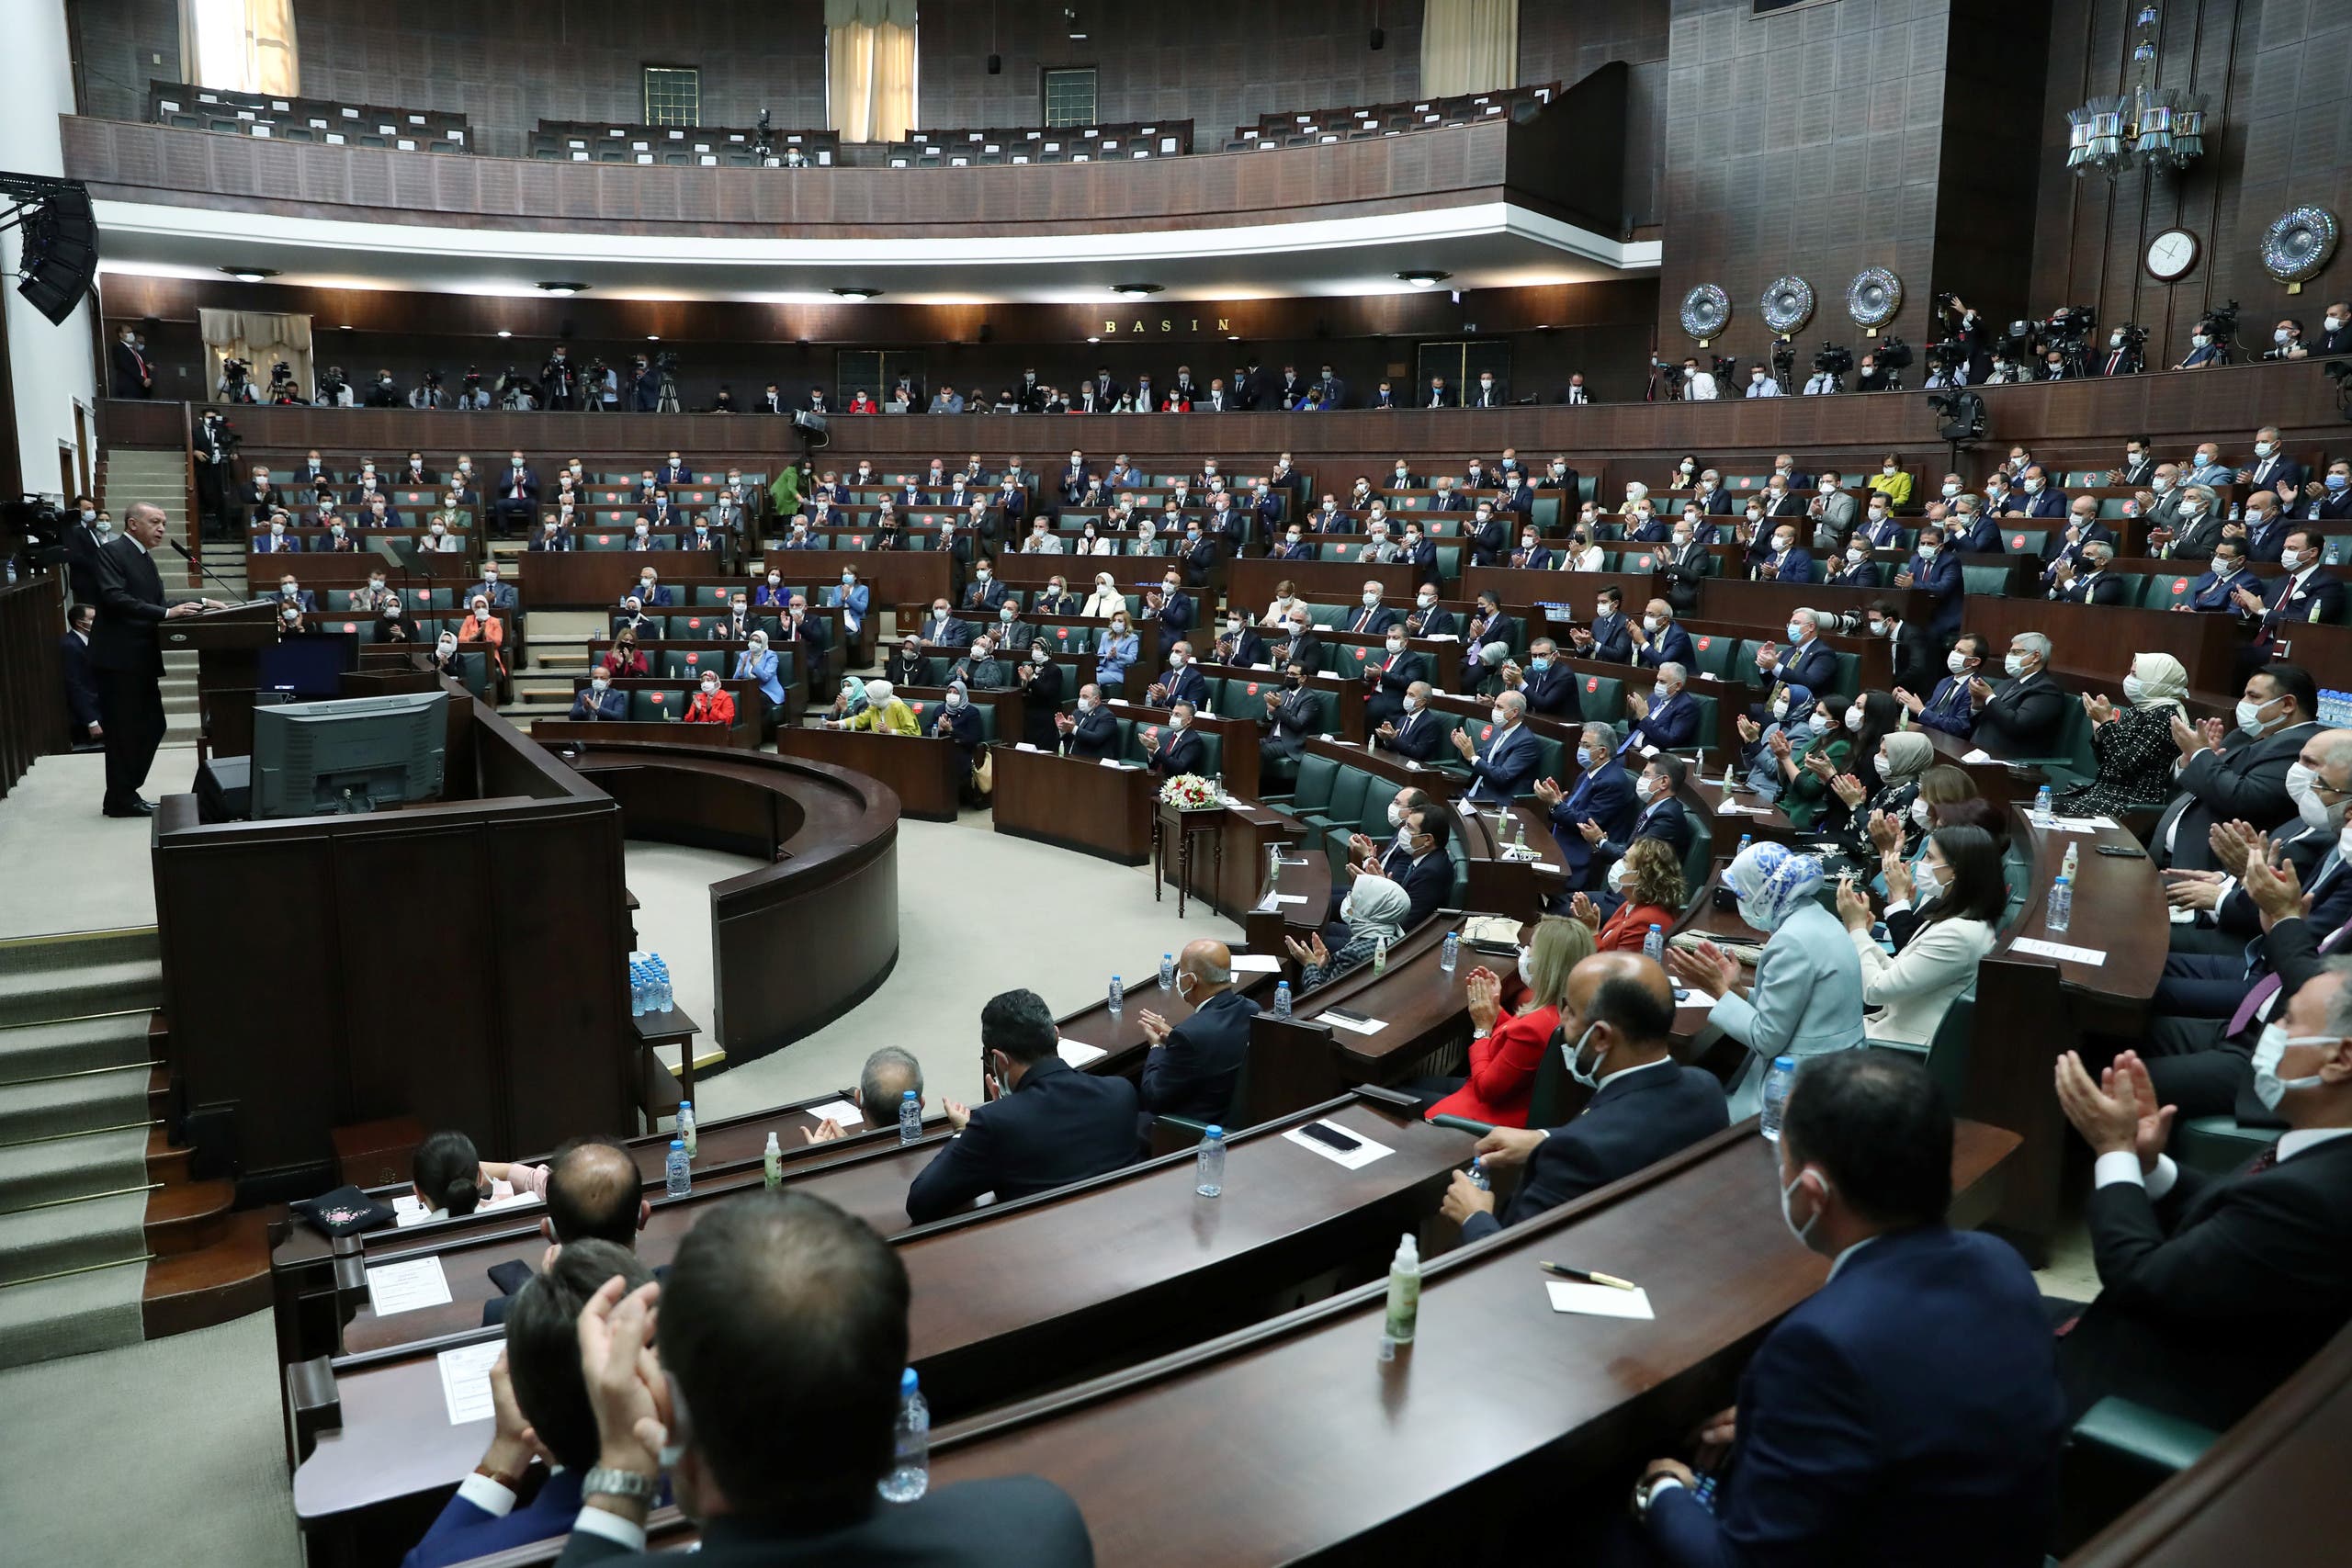 أردوغان يلقي كلمة أمام المجموعة البرلمانية لحزبه